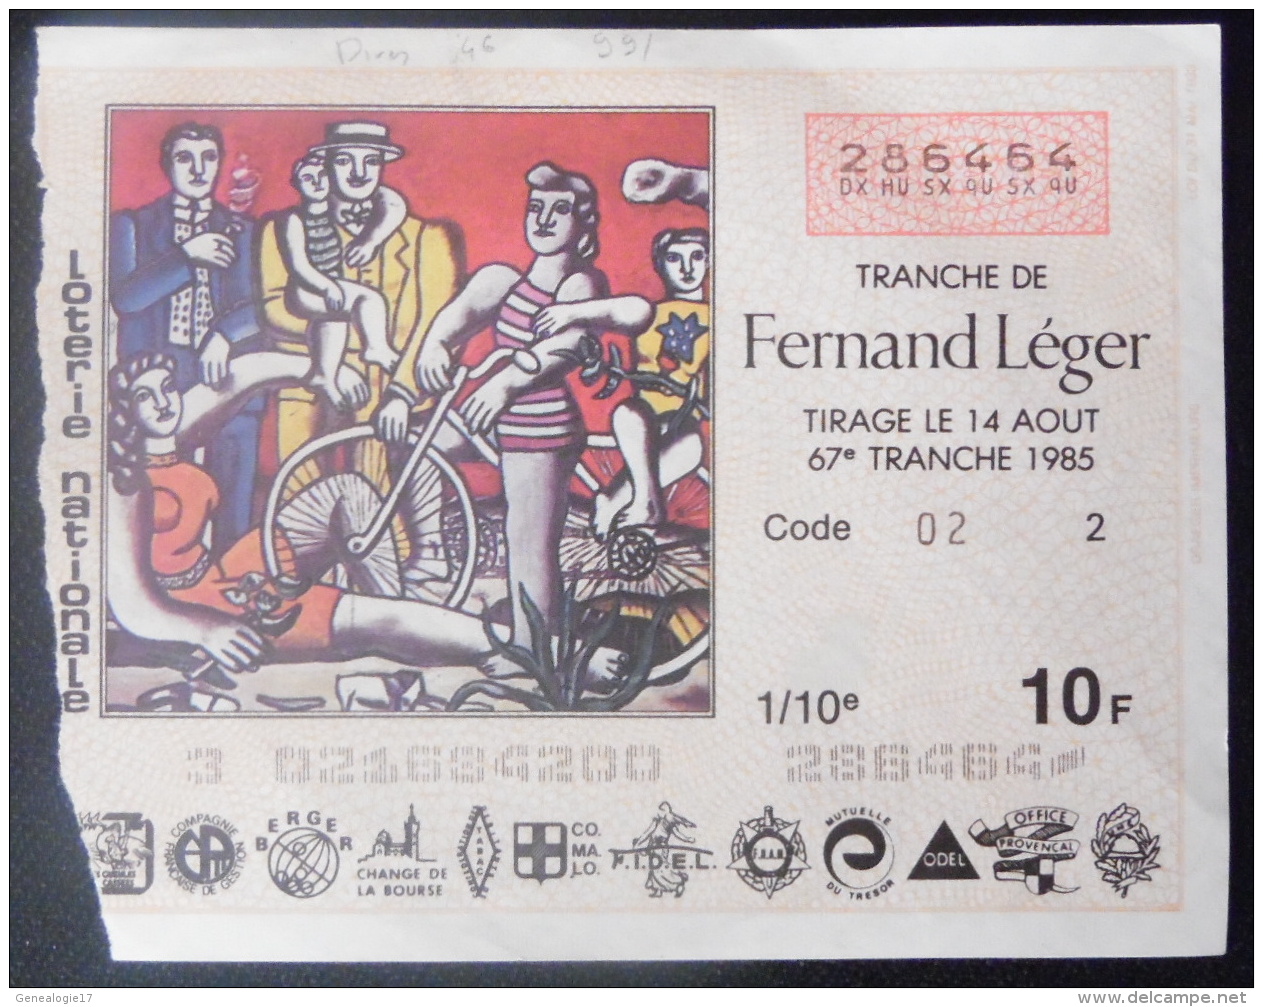 99 160 DIVERS - Billet De Loterie 1985 Tranche FERNAND LEGER - Billets De Loterie